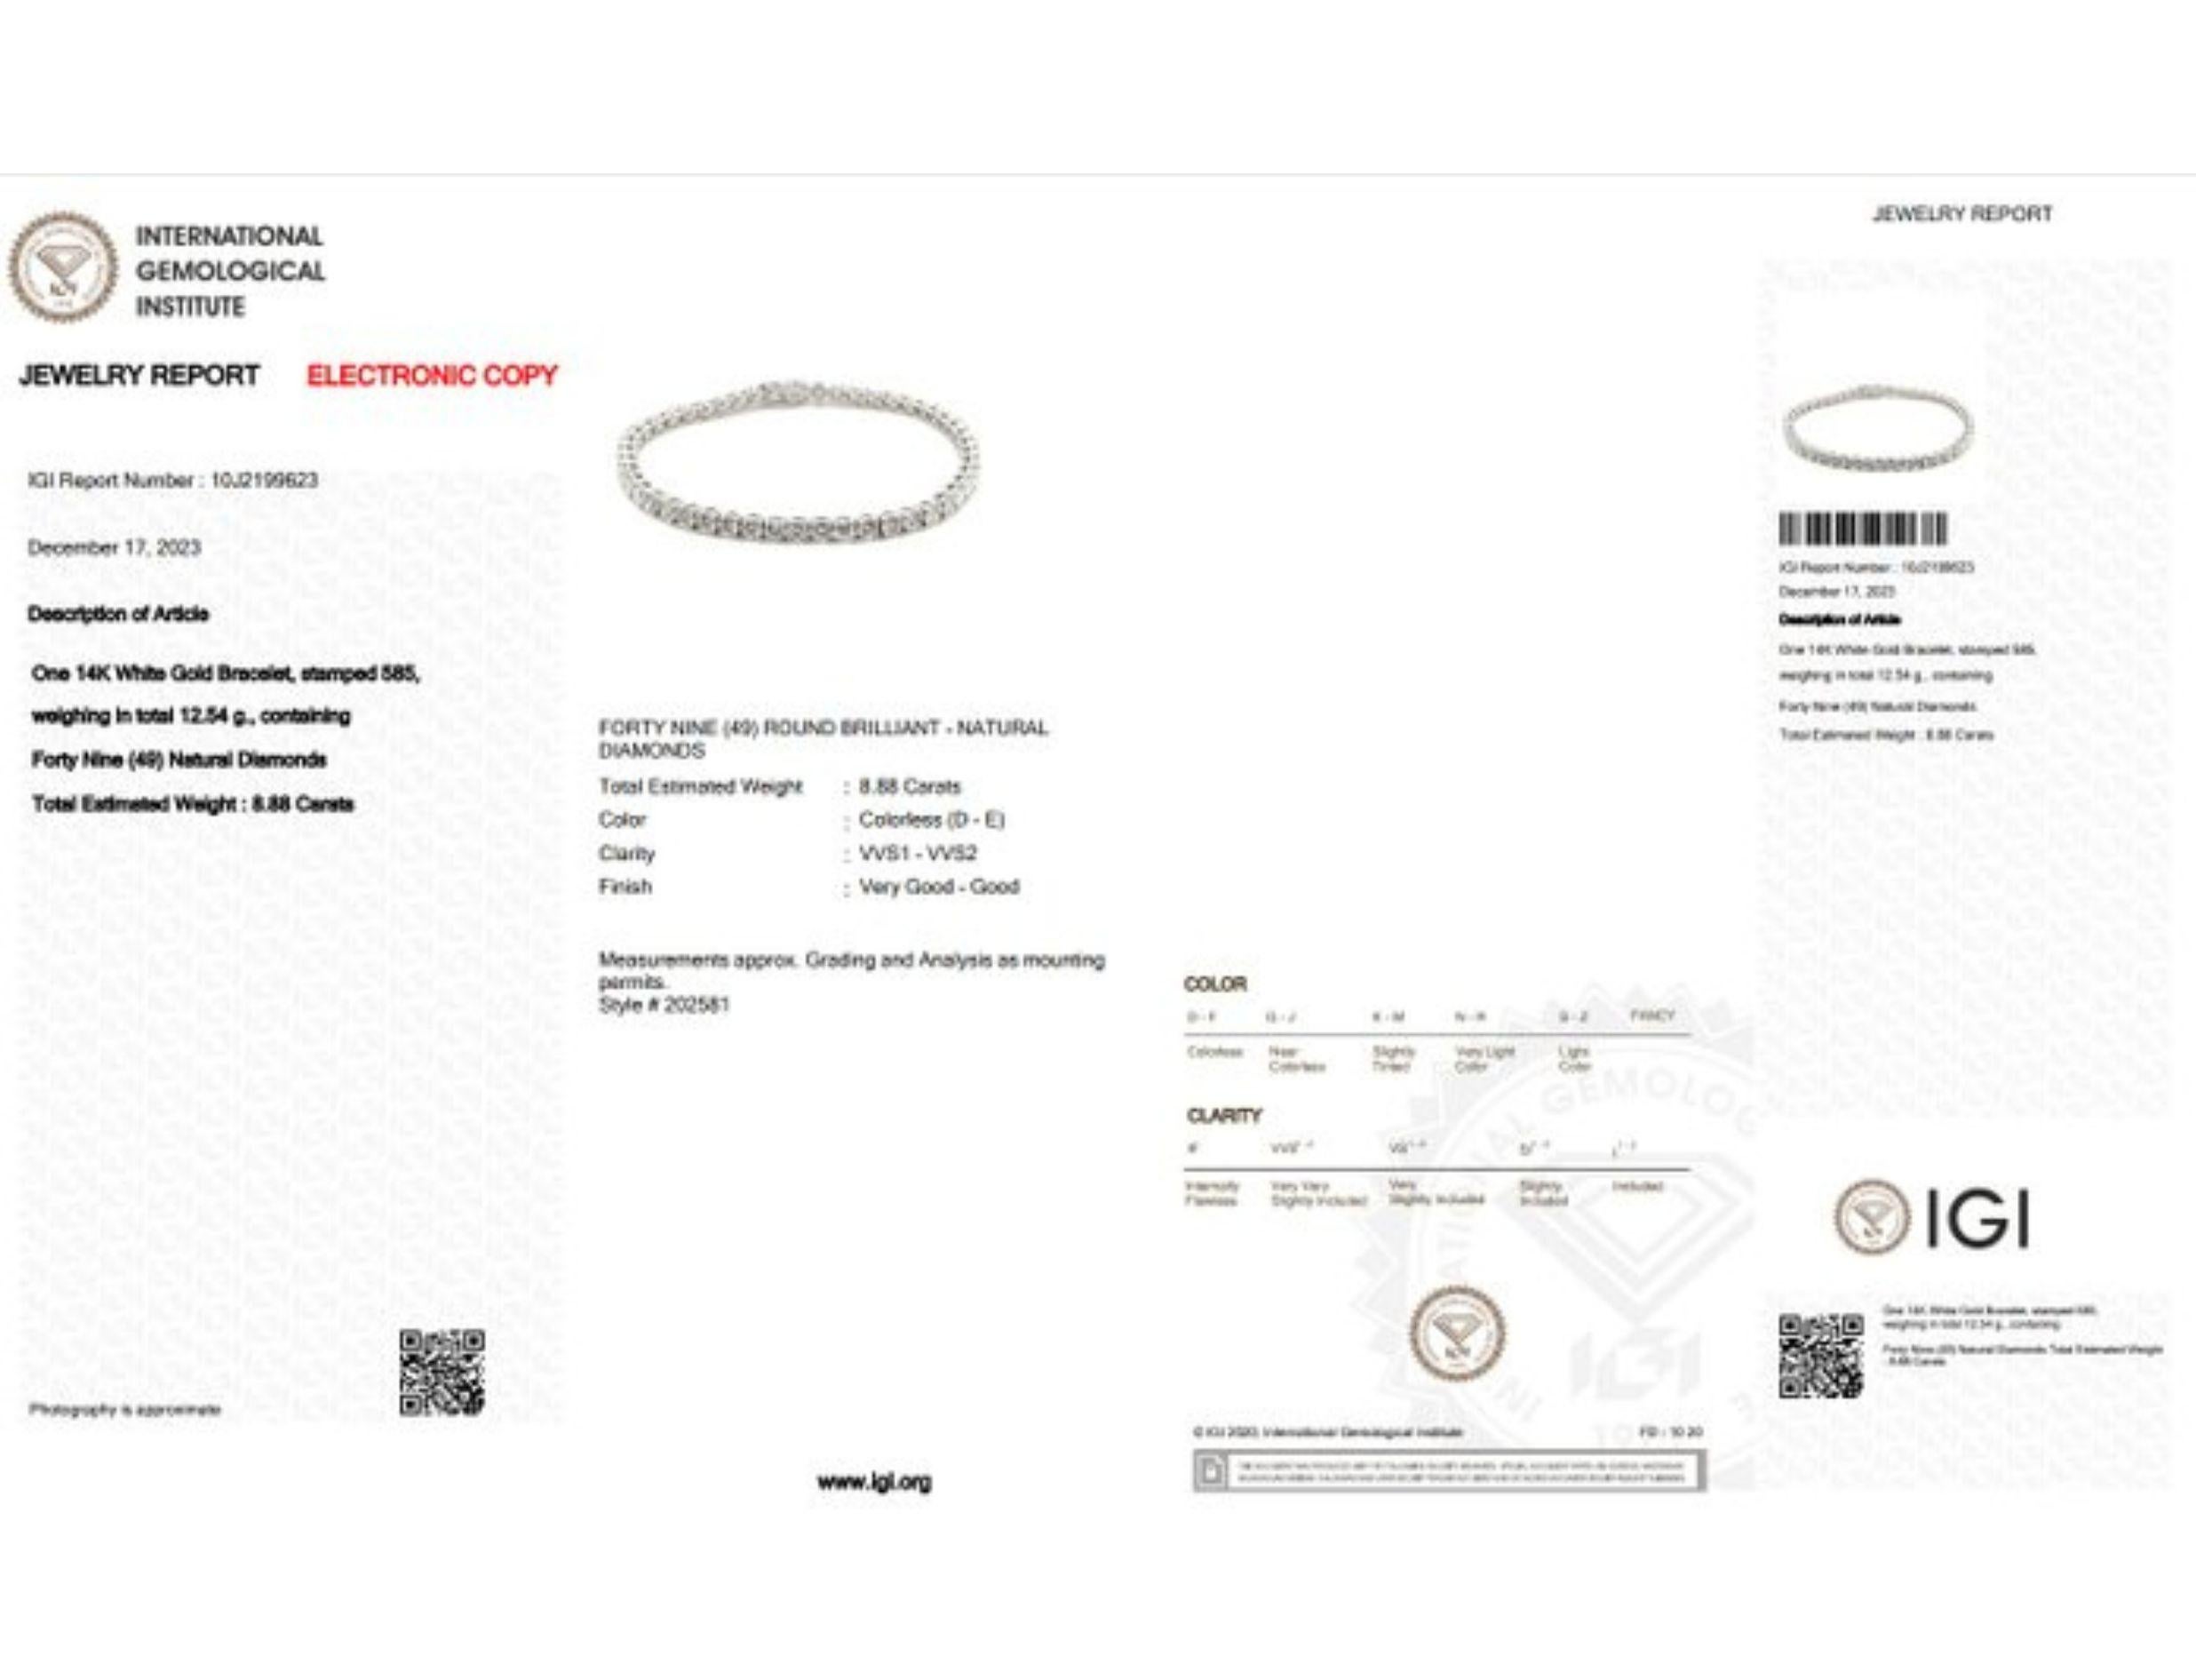 Elegant 8.88ct Diamond Tennis Bracelet set in 14K White Gold 1